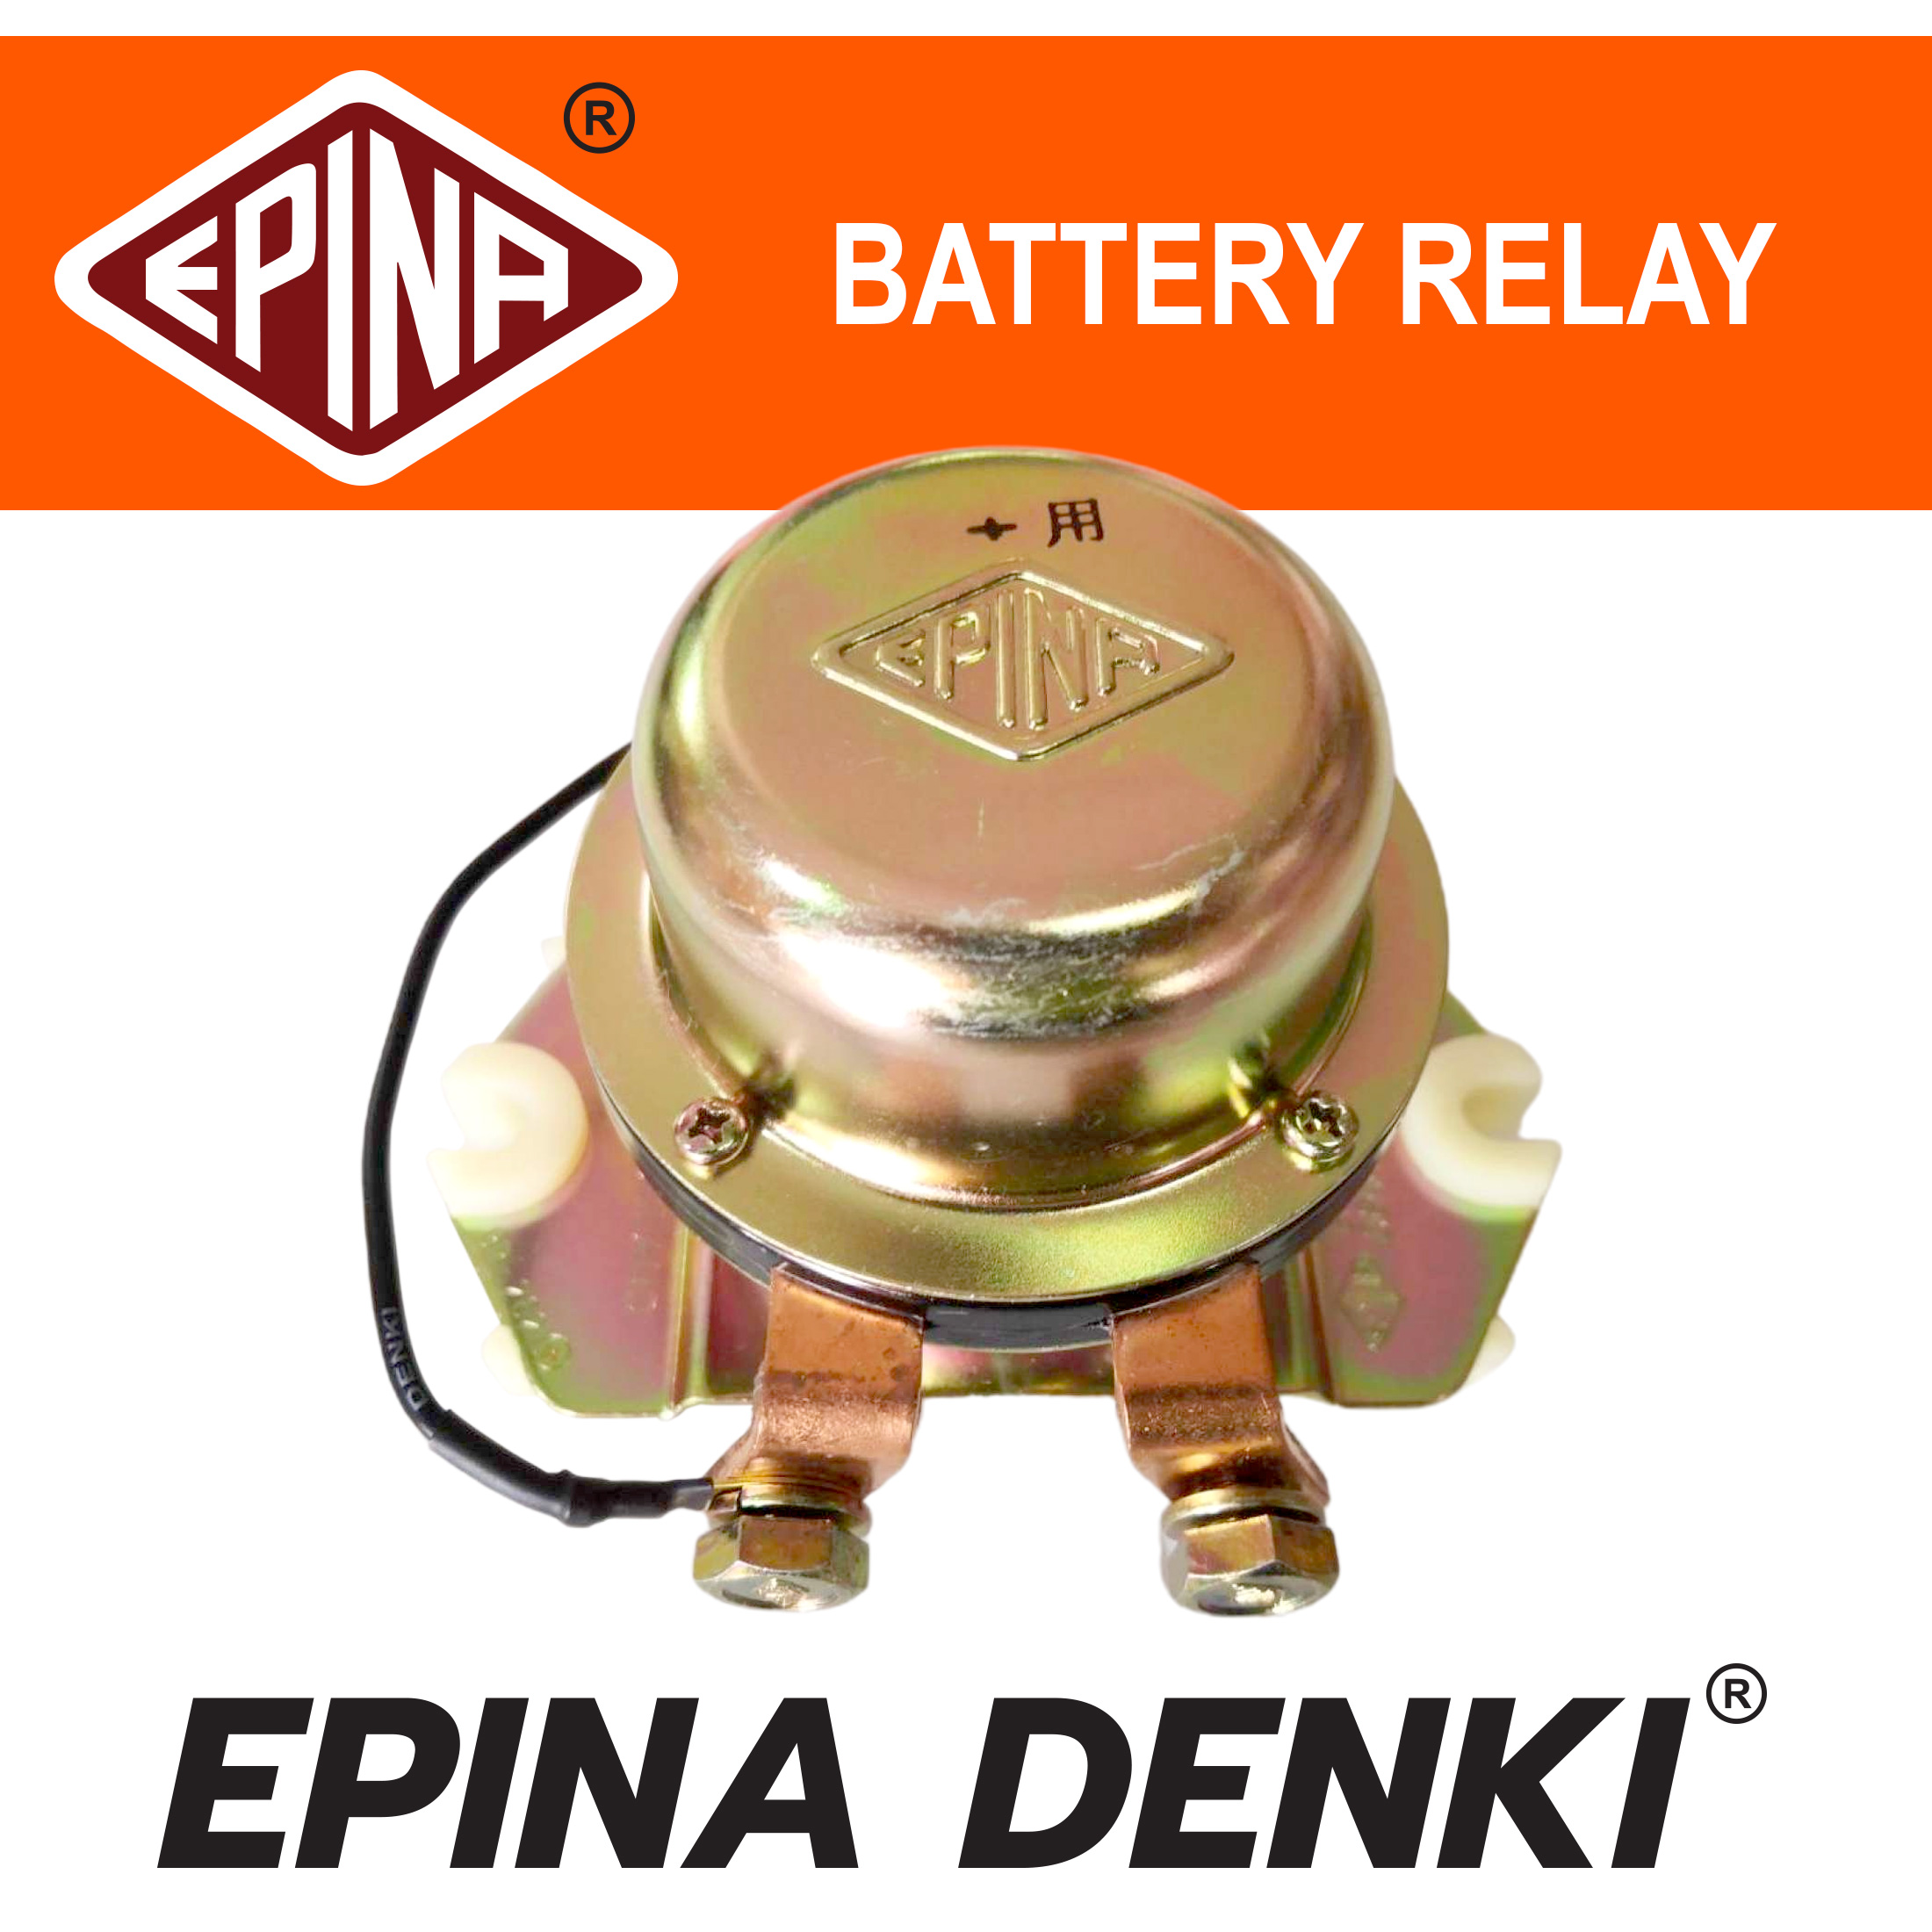 Battery Relay คัทเอาท์ตัดไฟ + ขั้วบวก ป๊อกแป๊กไฟ ตัดไฟ + ขั้วบวก 24v ยี่ห้อ EPINA DENKI แท้ อย่างดี ราคาส่ง